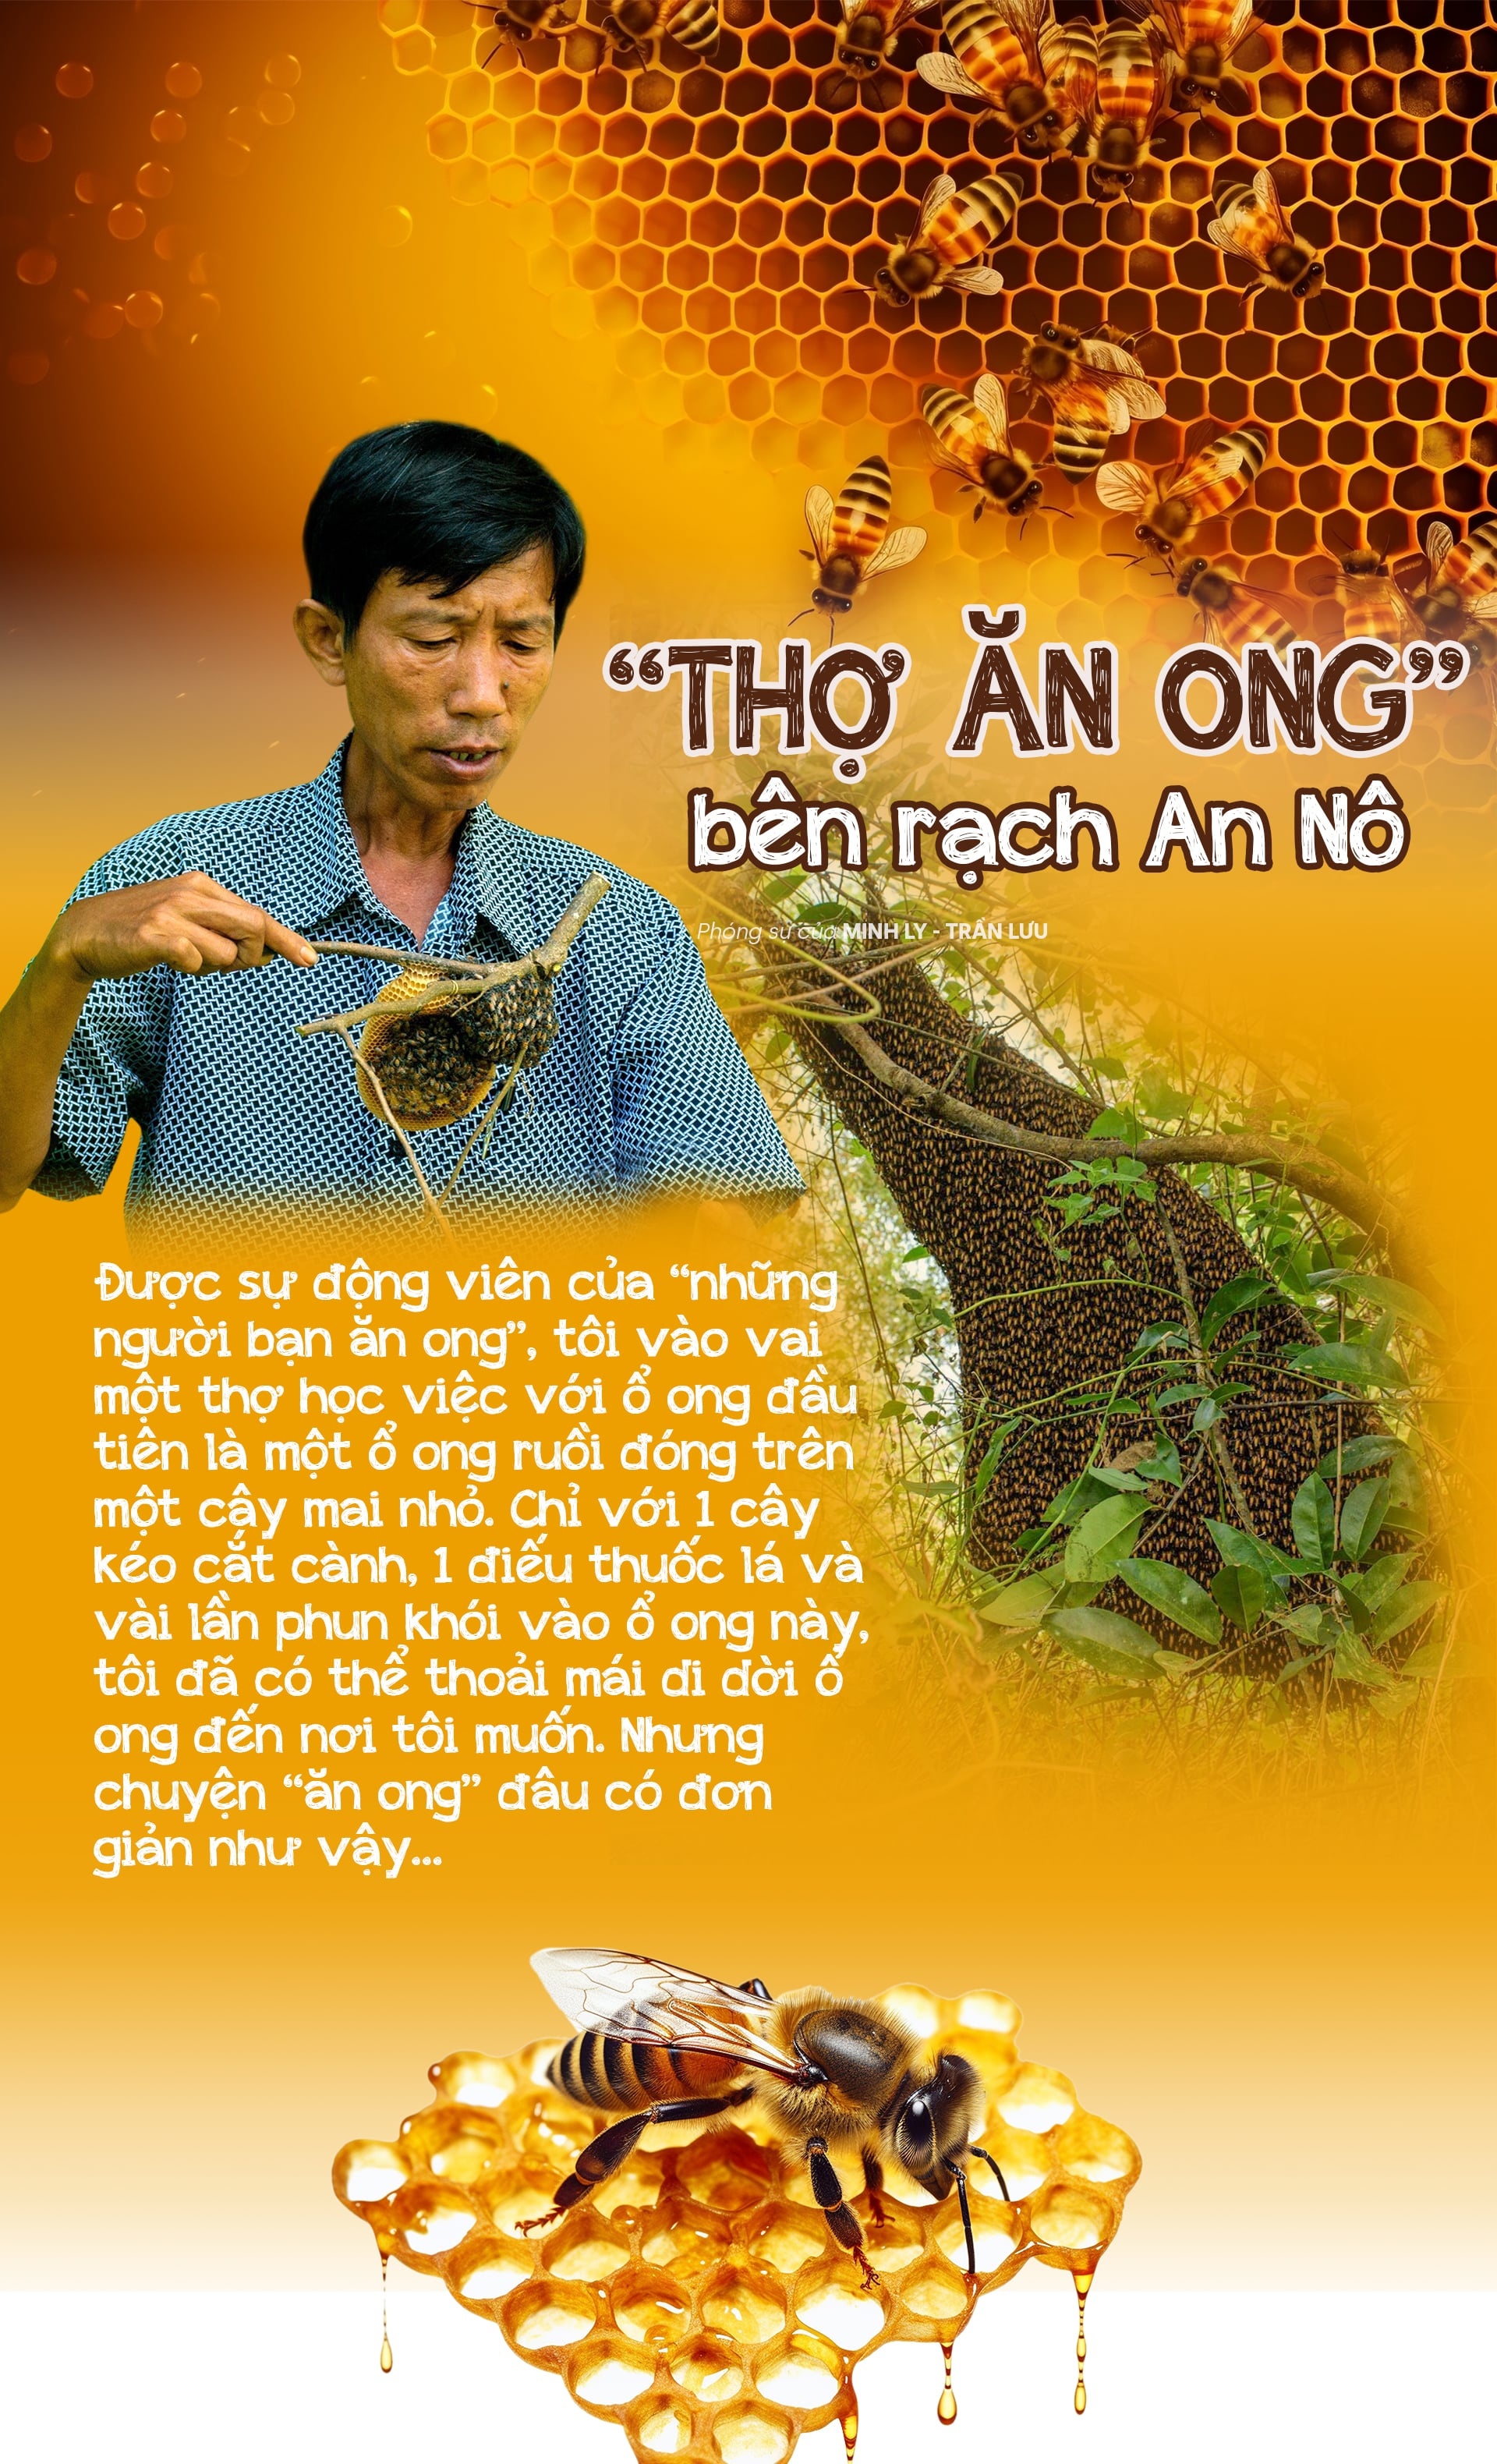 “Thợ ăn ong” bên rạch An Nô